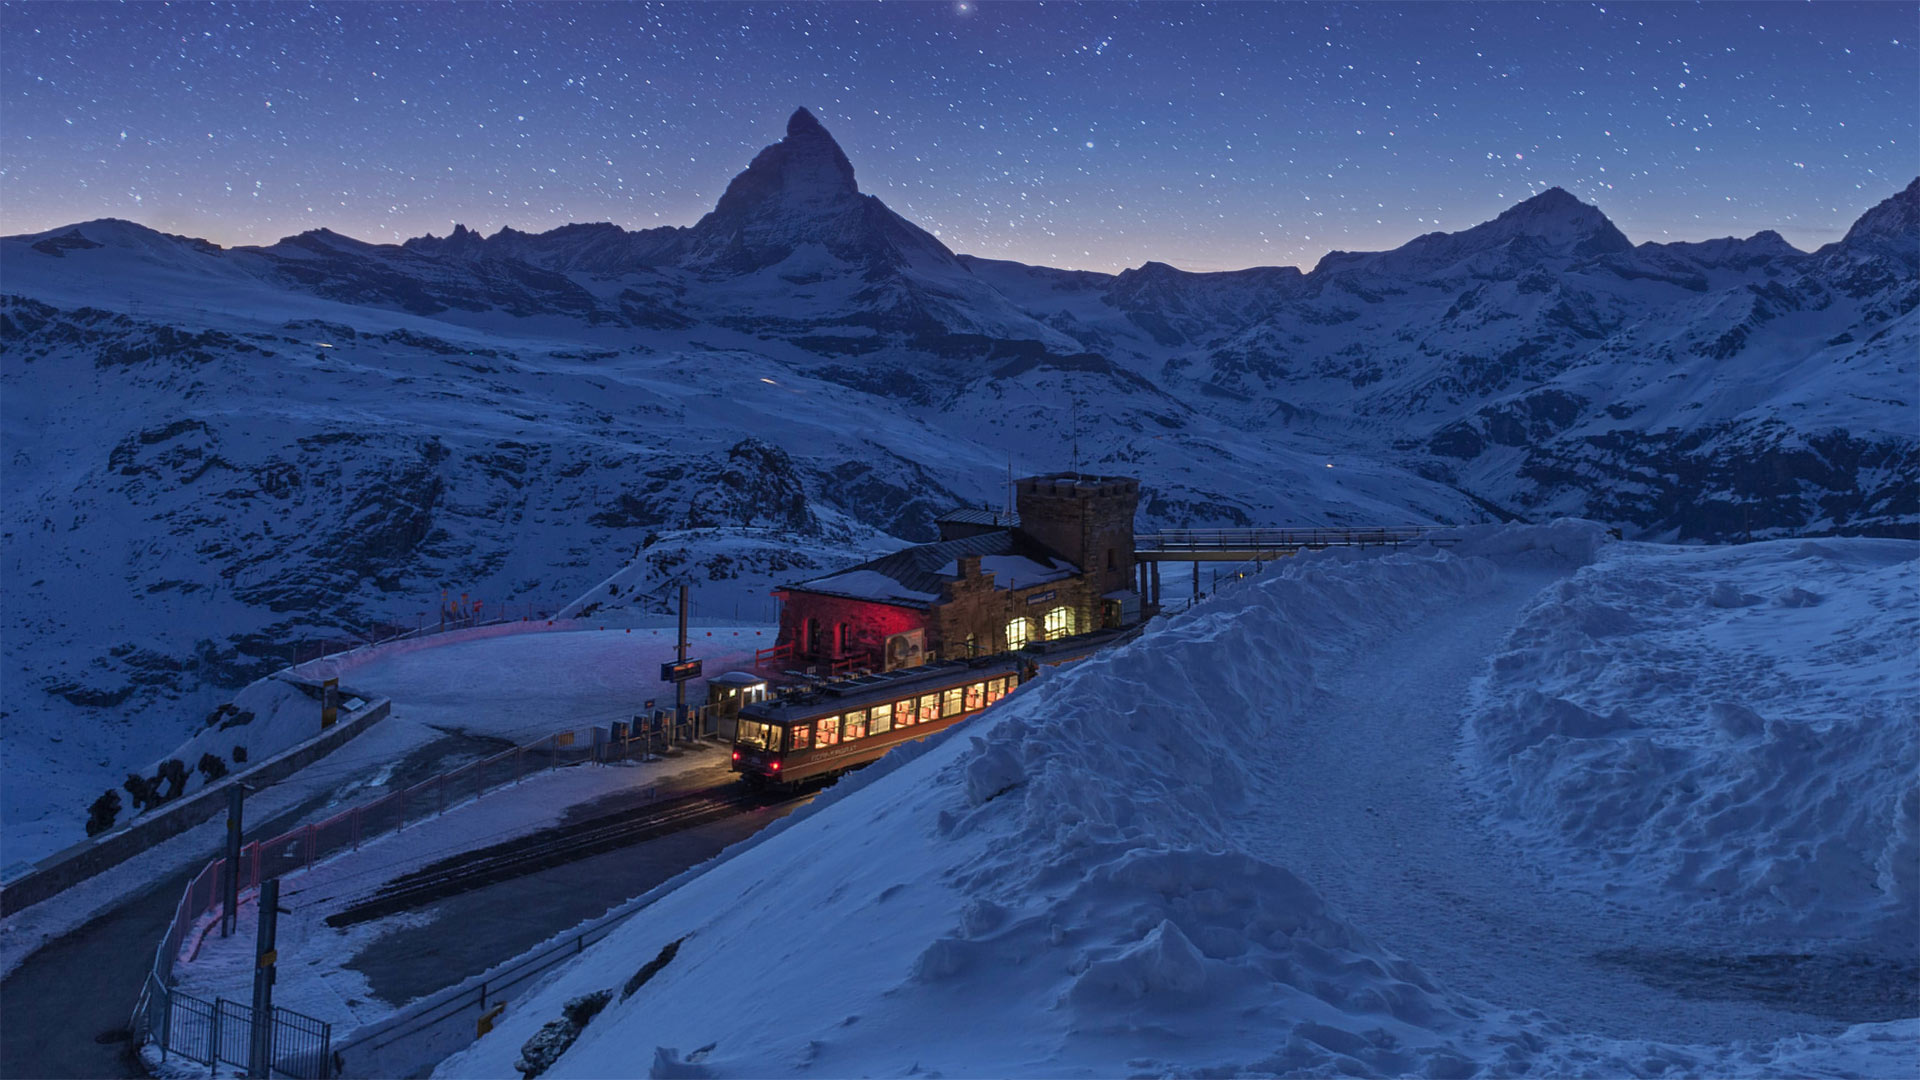 Gornergrat railway station and the Matterhorn in Zermatt, Switzerland - coolbiere photograph/Getty Images)